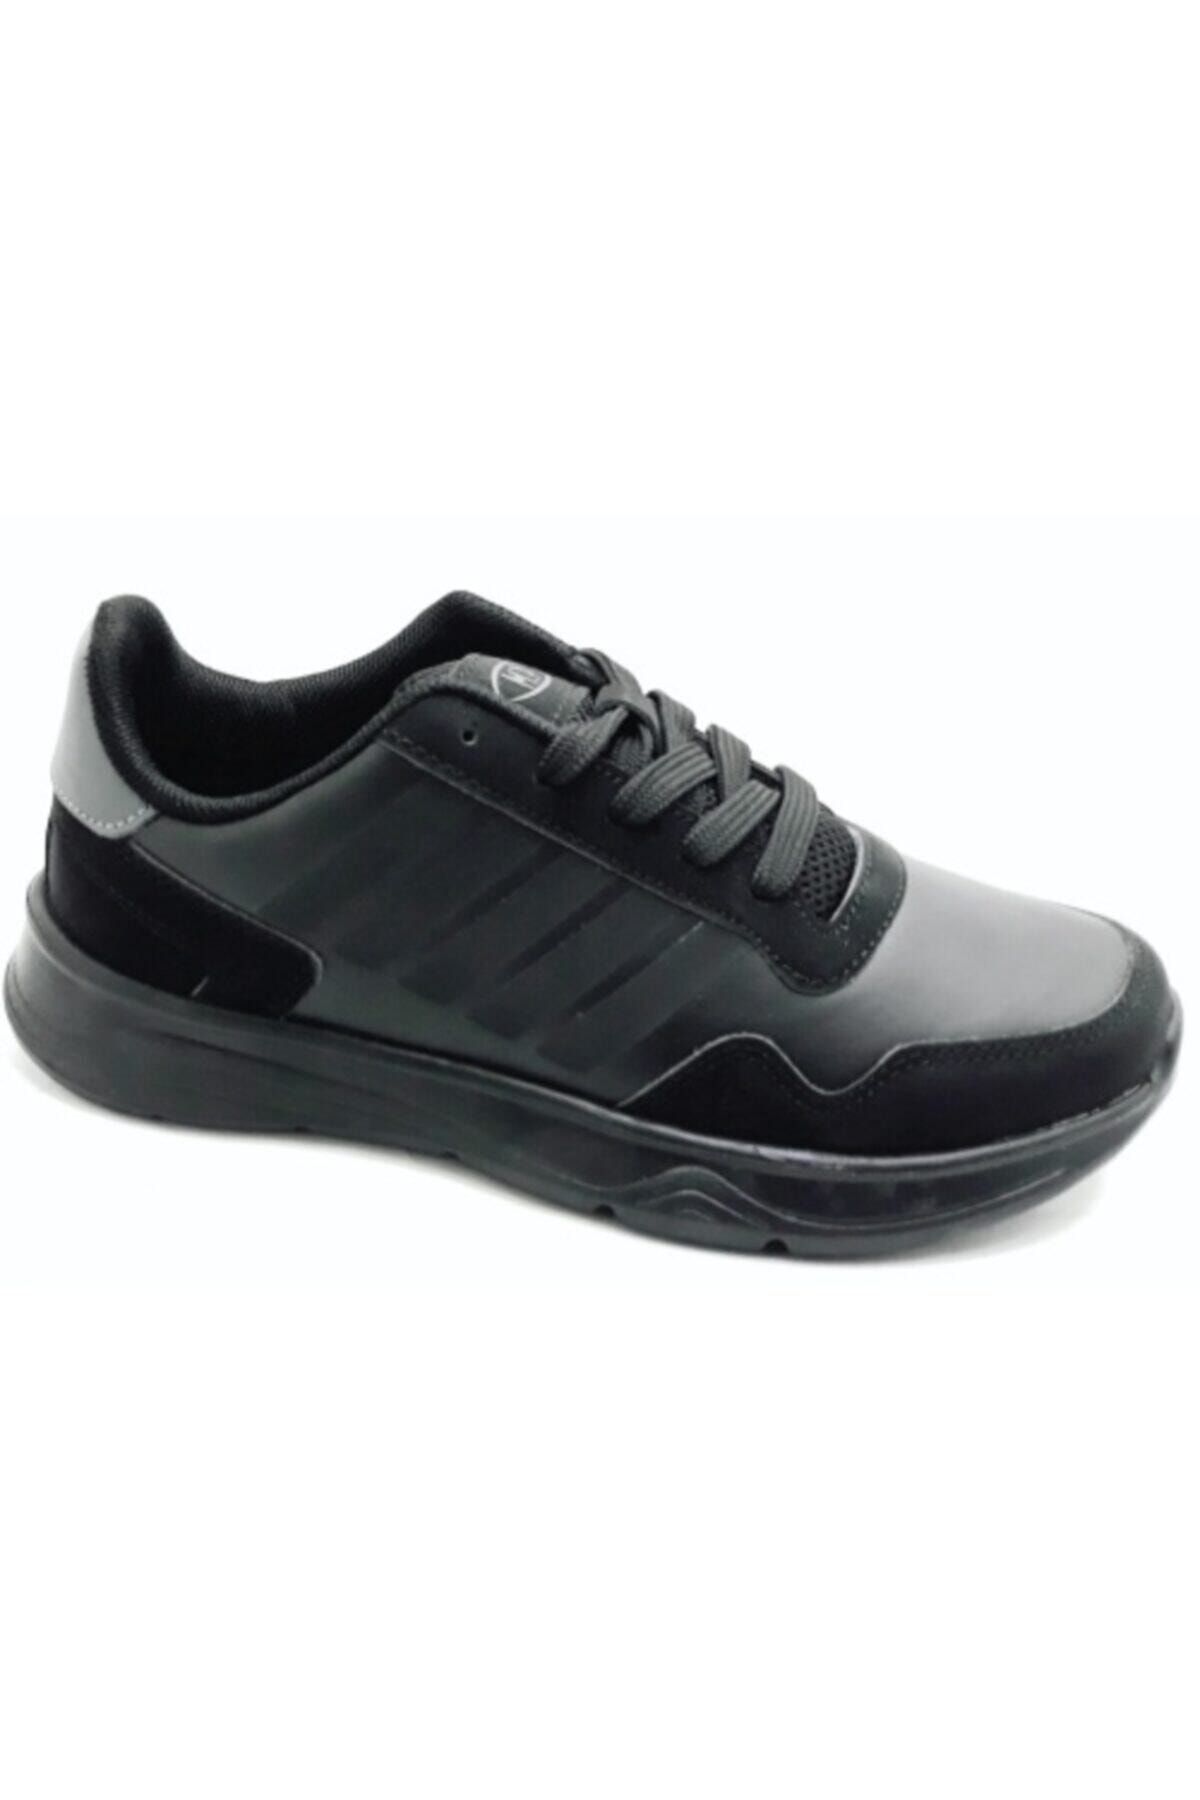 MP 202-1421 Kadın Günlük Yürüyüş Spor Ayakkabı Siyah